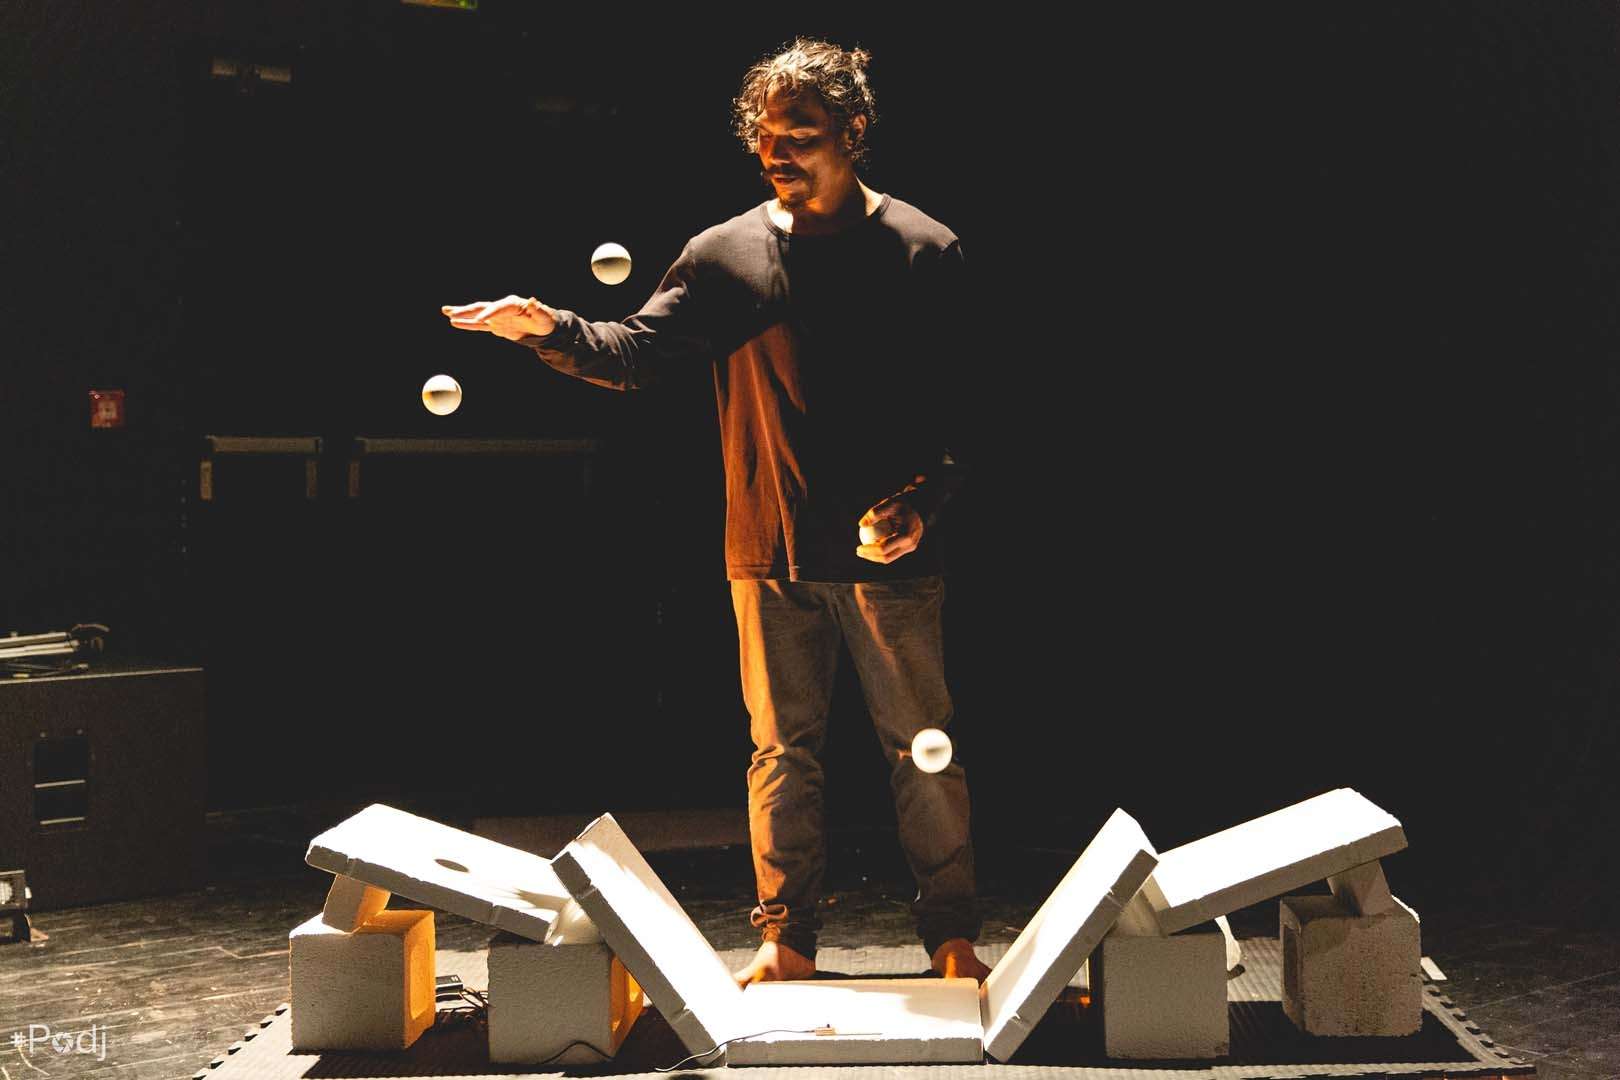 Un jongleur fait rebondir des balles sur des parpaings